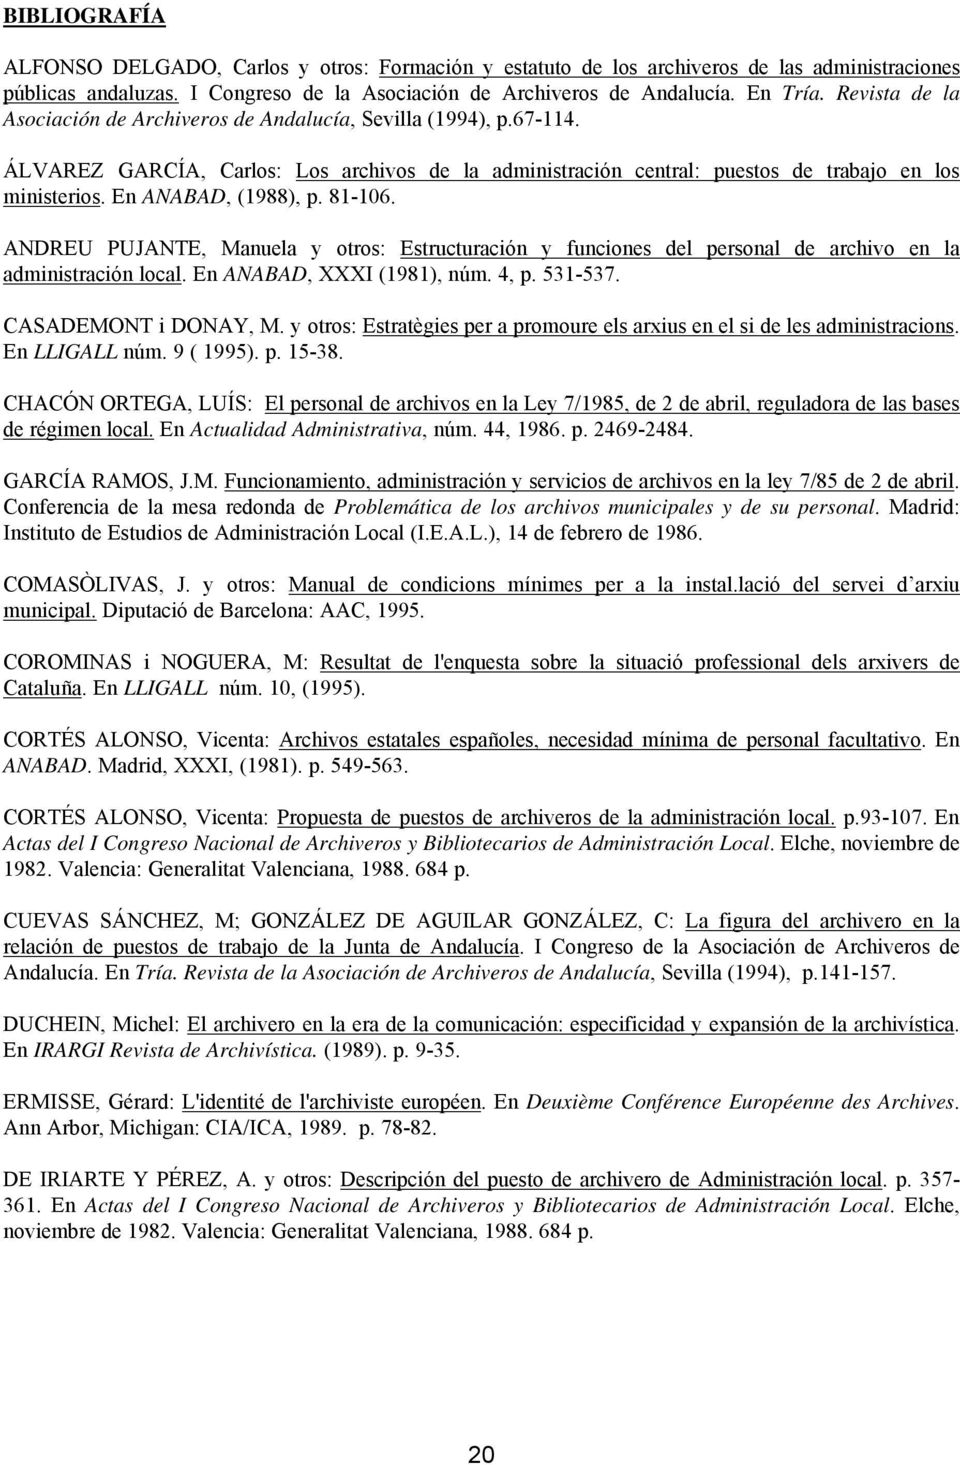 En ANABAD, (1988), p. 81-106. ANDREU PUJANTE, Manuela y otros: Estructuración y funciones del personal de archivo en la administración local. En ANABAD, XXXI (1981), núm. 4, p. 531-537.